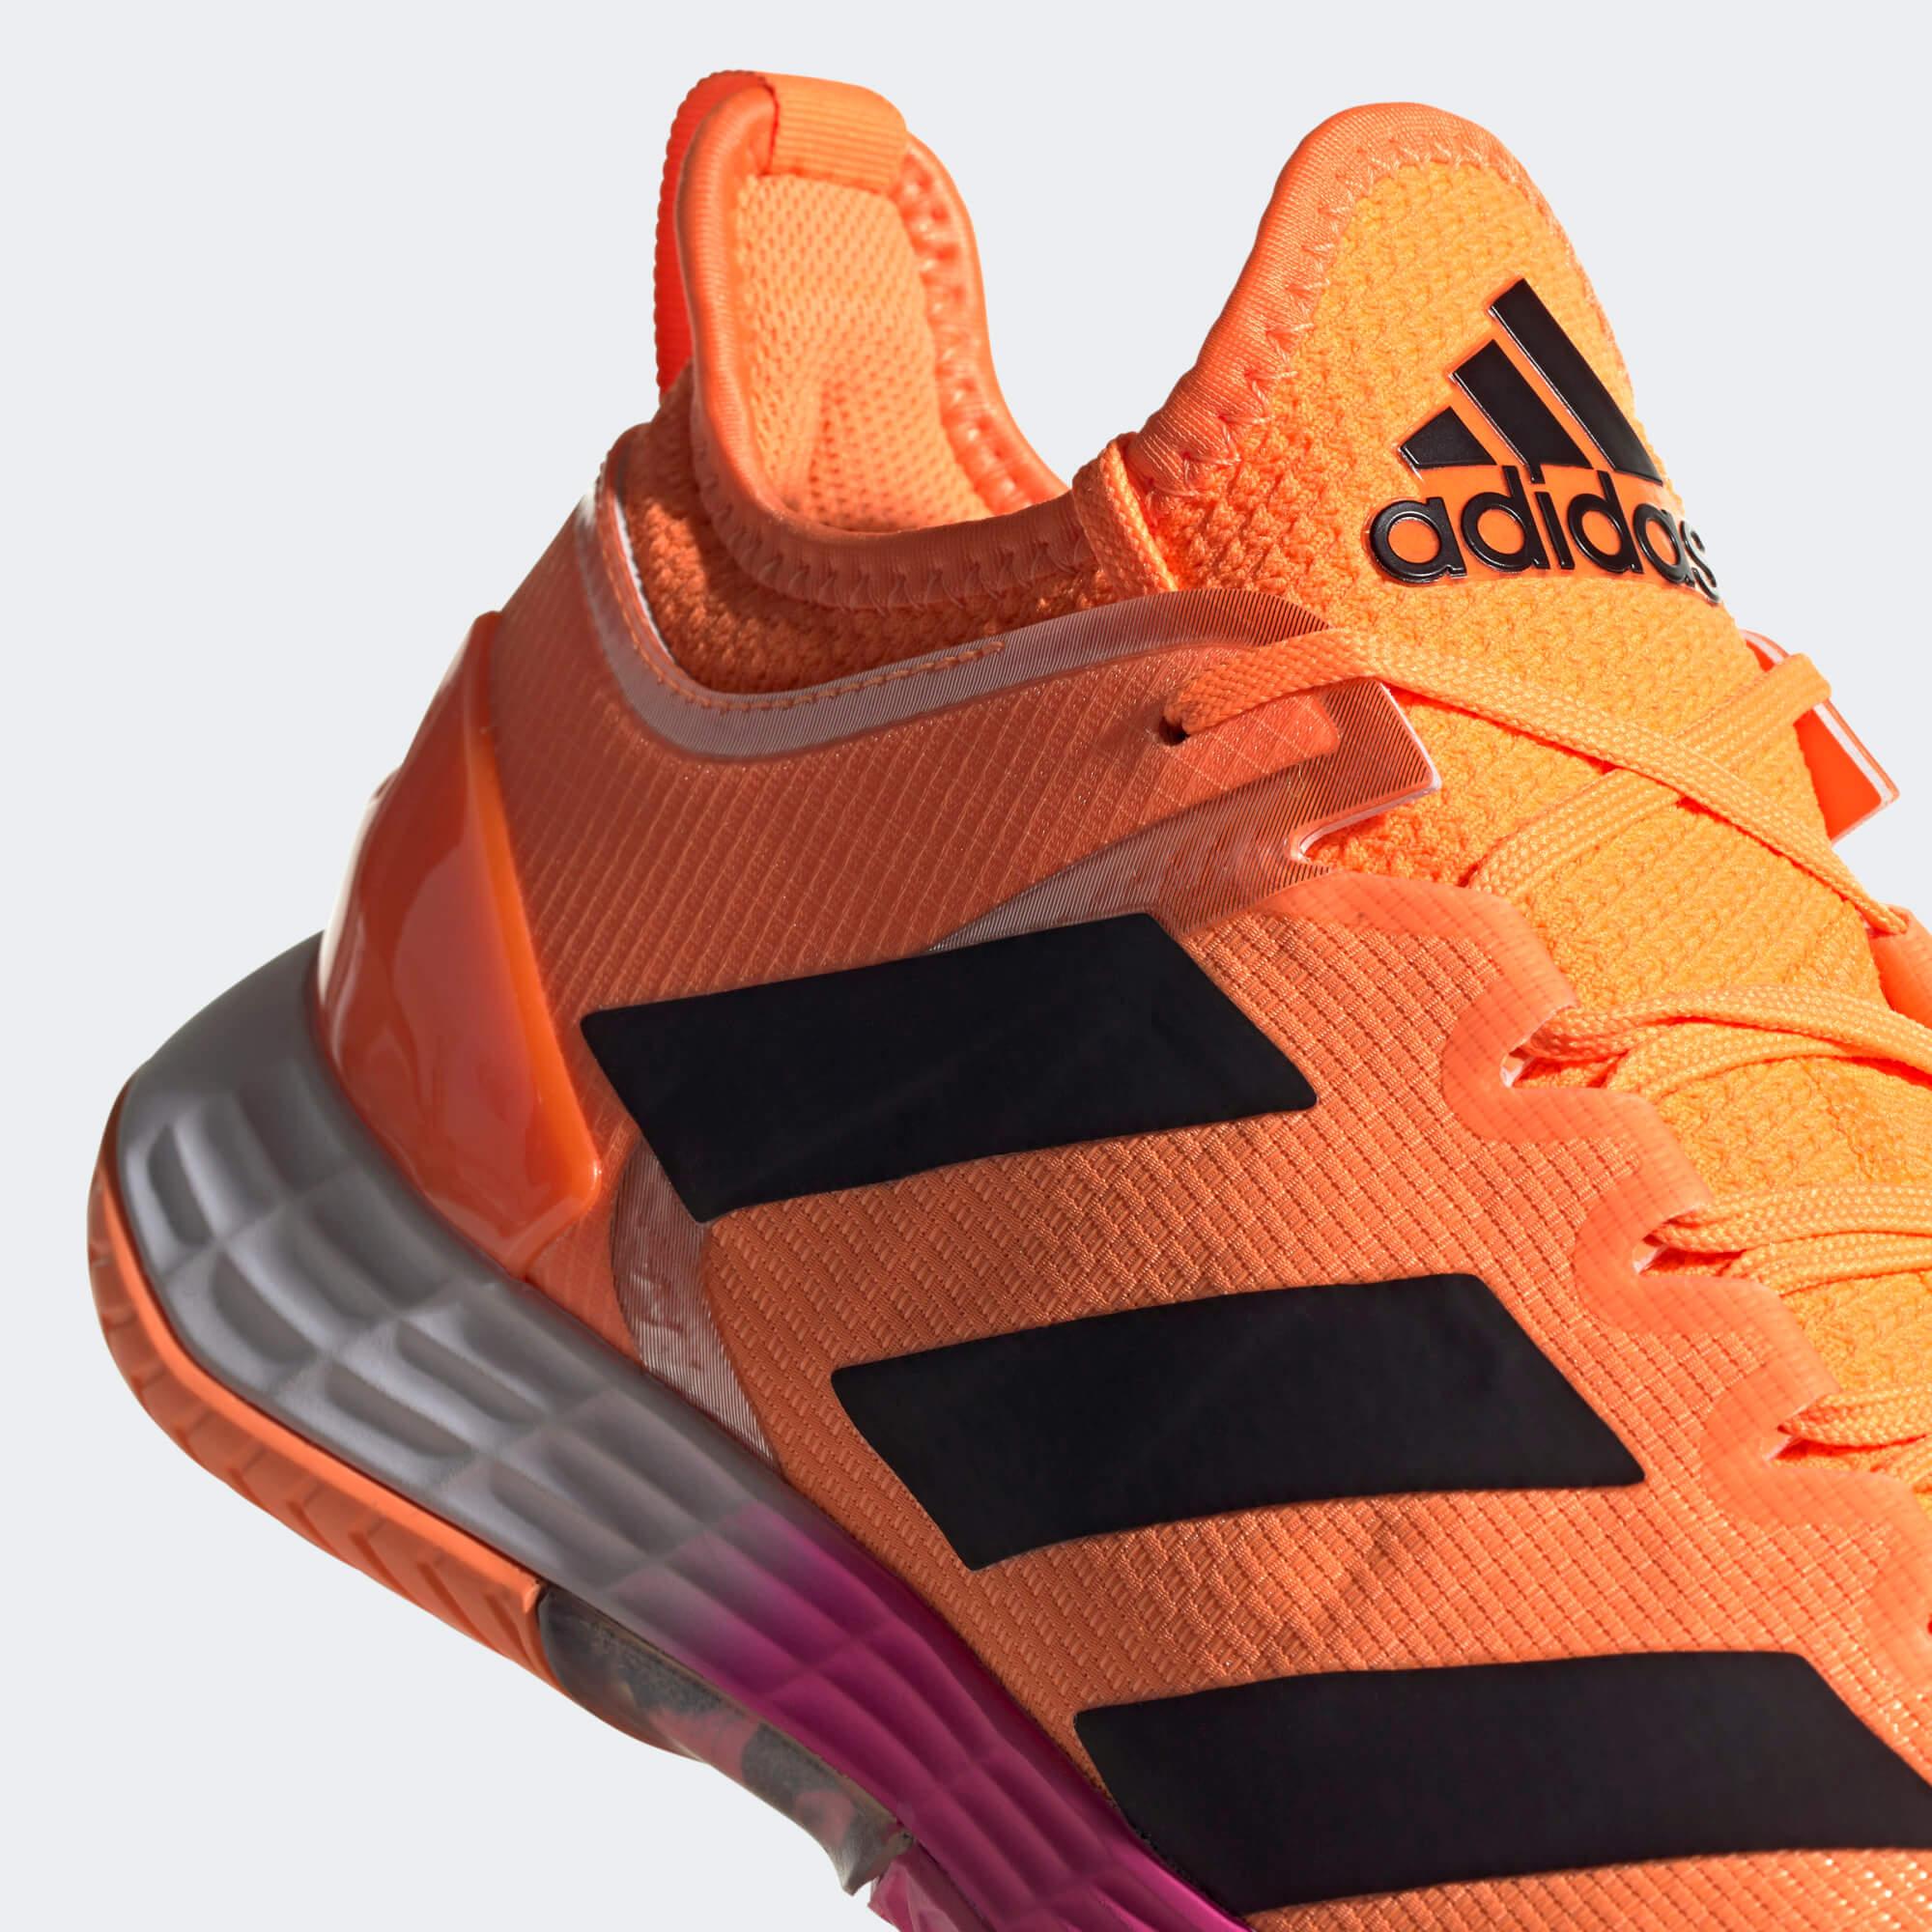 Adidas Mens Adizero Ubersonic 4 Tennis Shoes - Screaming ...